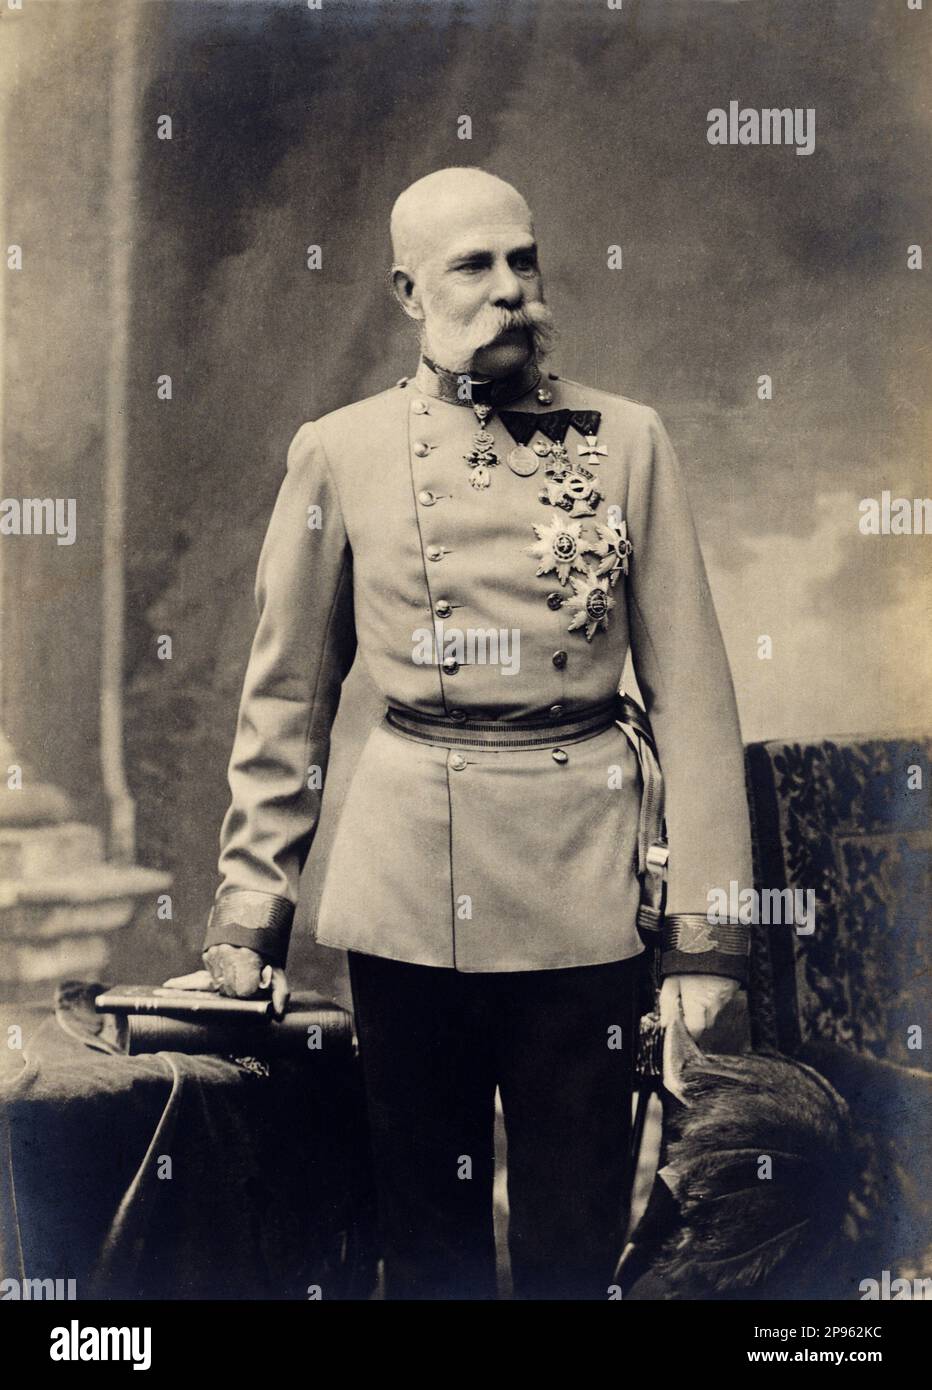 1900 c. , Wien , ÖSTERREICH : der österreichische Kaiser FRANZ JOSEF von ABSBURG Osterreich ( 1830 - 1916 ) , Kaiser von Österreich , König von Ungarn und Böhmen . - FRANCESCO GIUSEPPE - JOSEPH - ABSBURG - ASBURG - ASBURGO - ADEL - NOBILI - Nobiltà - REALI - HABSBURG - HASBURG - ADEL - ÖSTERREICH - Bart - barba - Baffi - Schnurrbart - Militäruniform - divisa uniforme militare - Francesco Giuseppe - medaglie -- - Archivio GBB Stockfoto